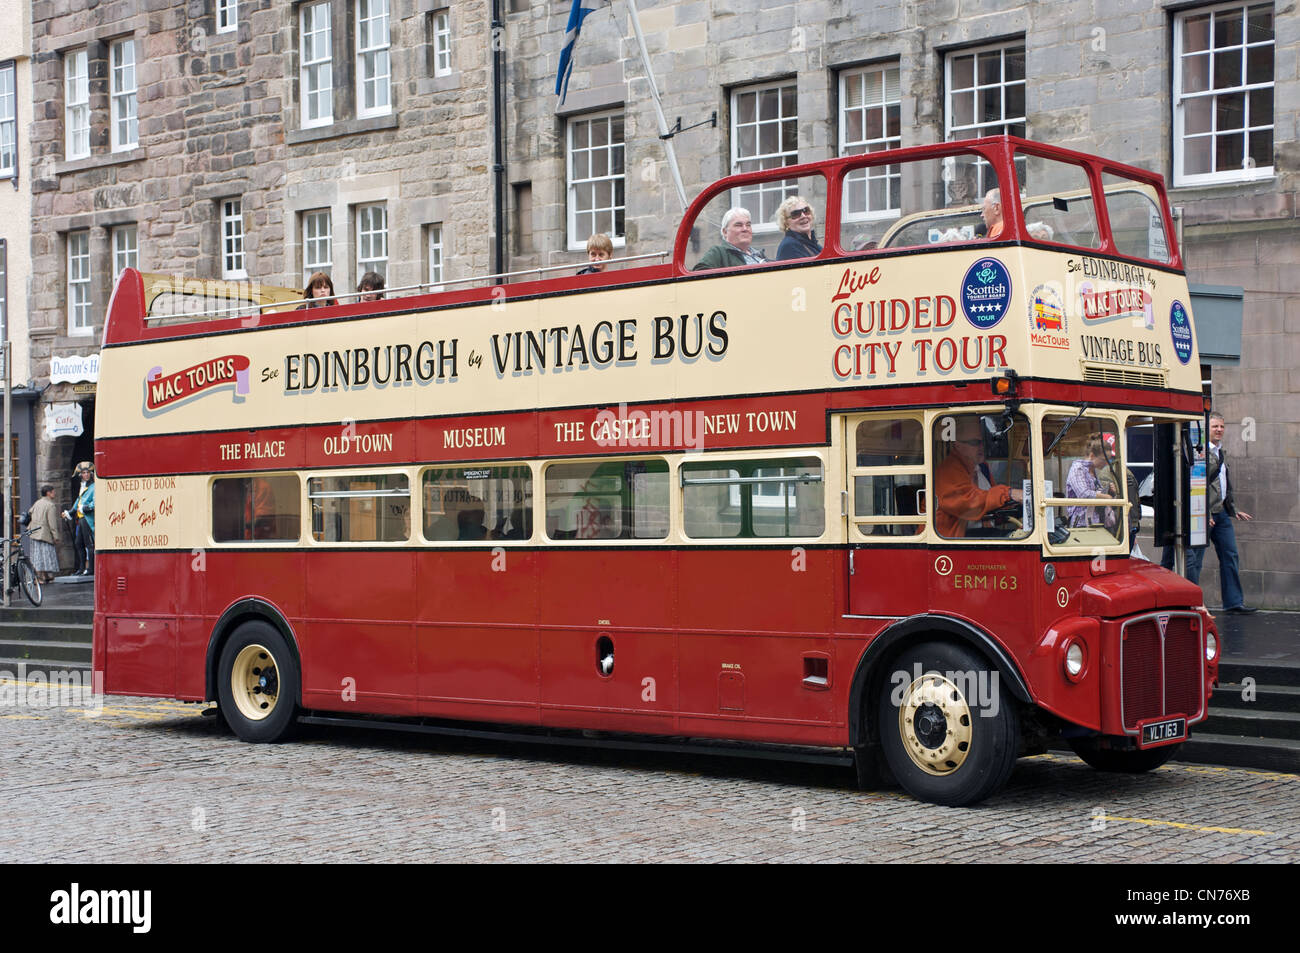 Edinburgh vintage bus tours Stock Photo